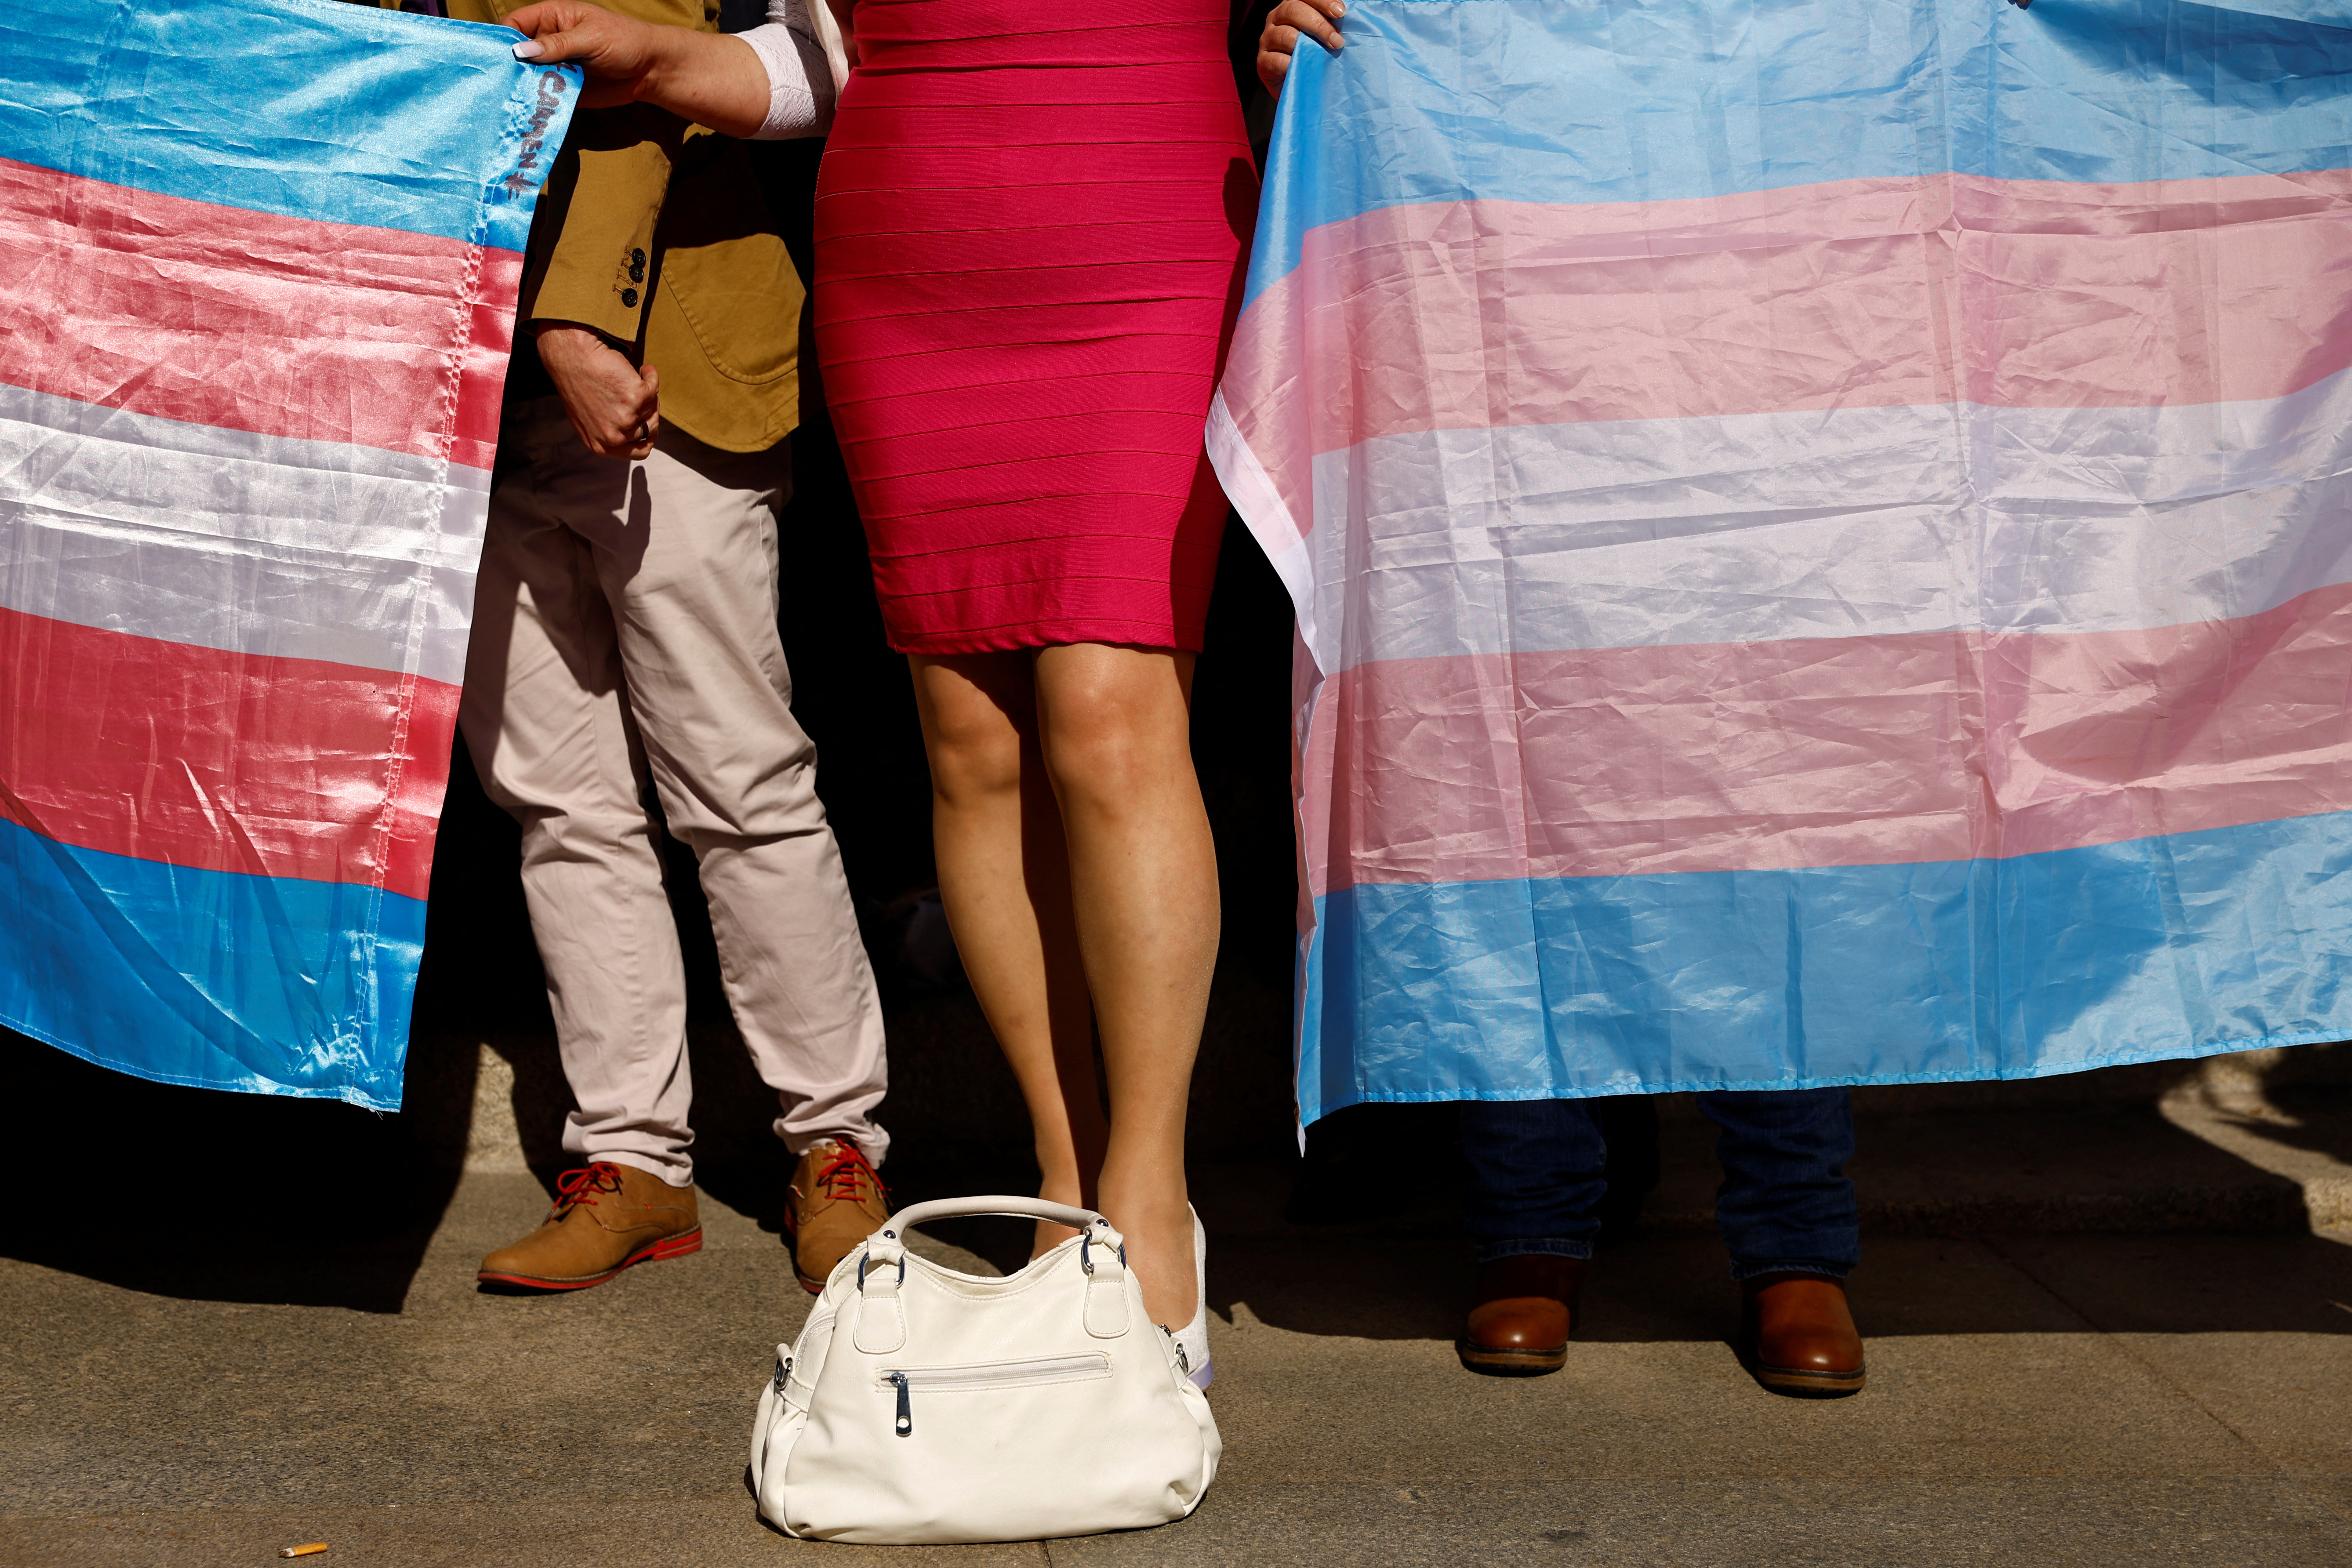 Una de las barreras que enfrentan las personas con identidades de género diversas, para el disfrute de sus derechos, son las medidas sociales reguladas por medio de los marcadores “sexo”. REUTERS/Susana Vera